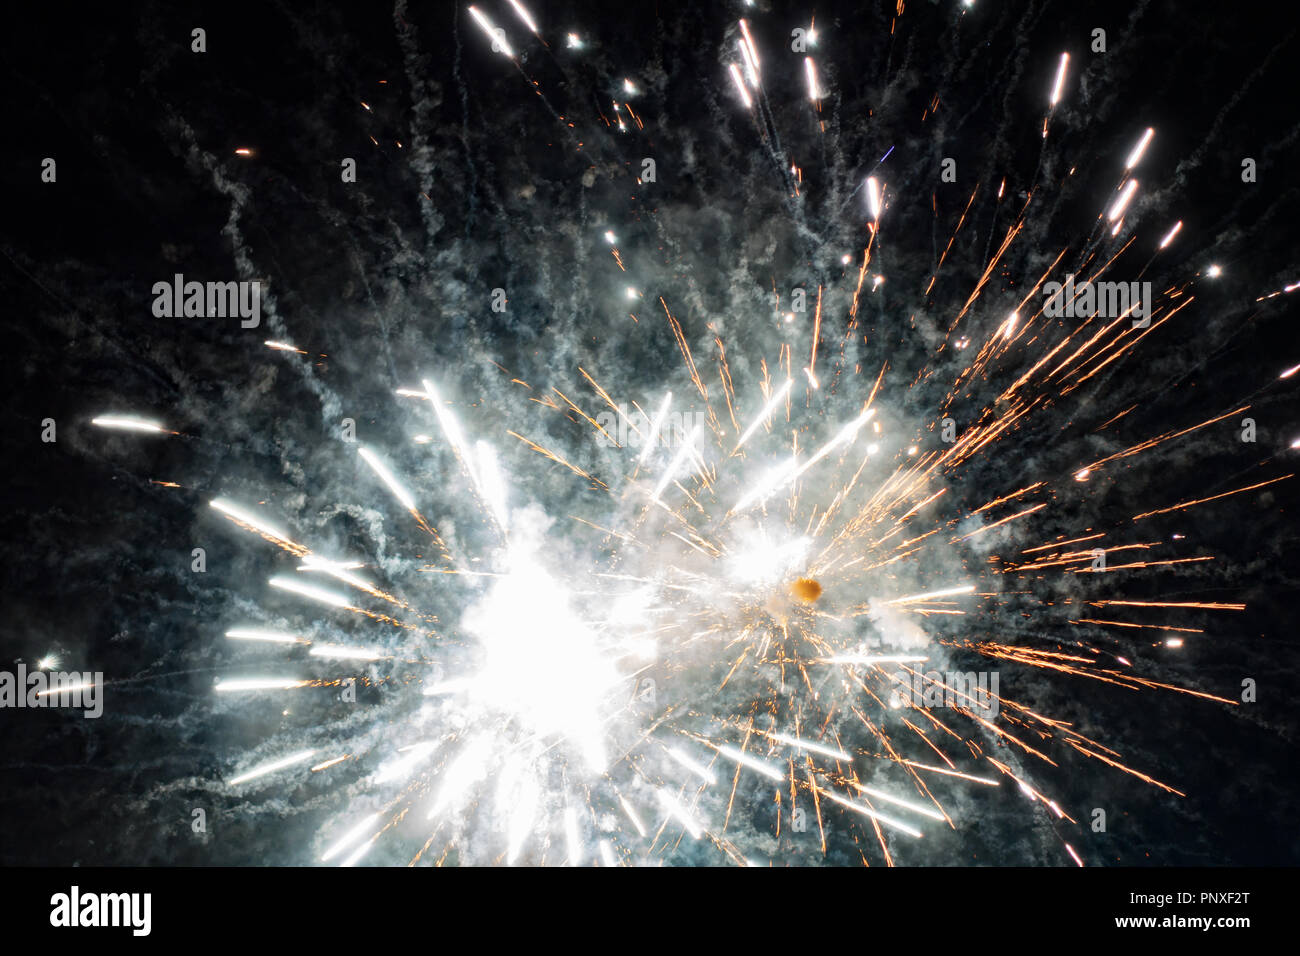 exploding fireworks in night sky. Stock Photo